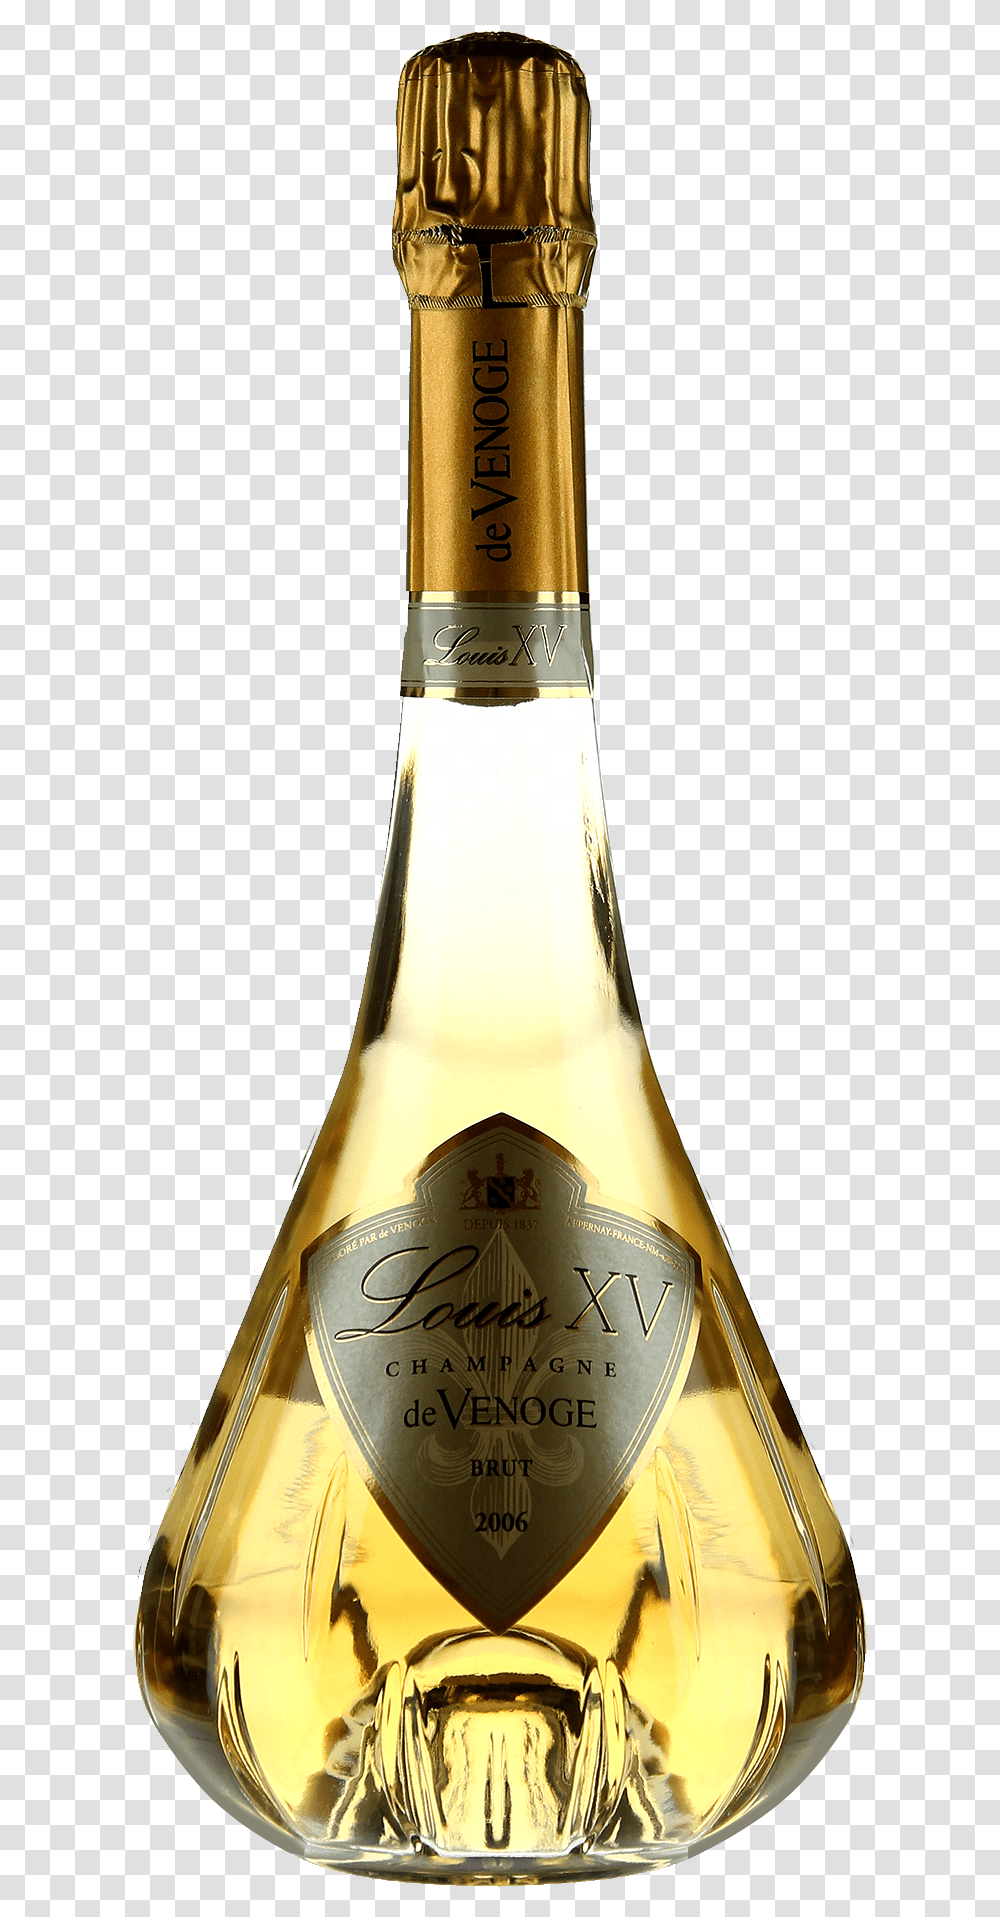 Champagne Louis Xv De Venoge Louis Xv 2008, Alcohol, Beverage, Drink, Liquor Transparent Png